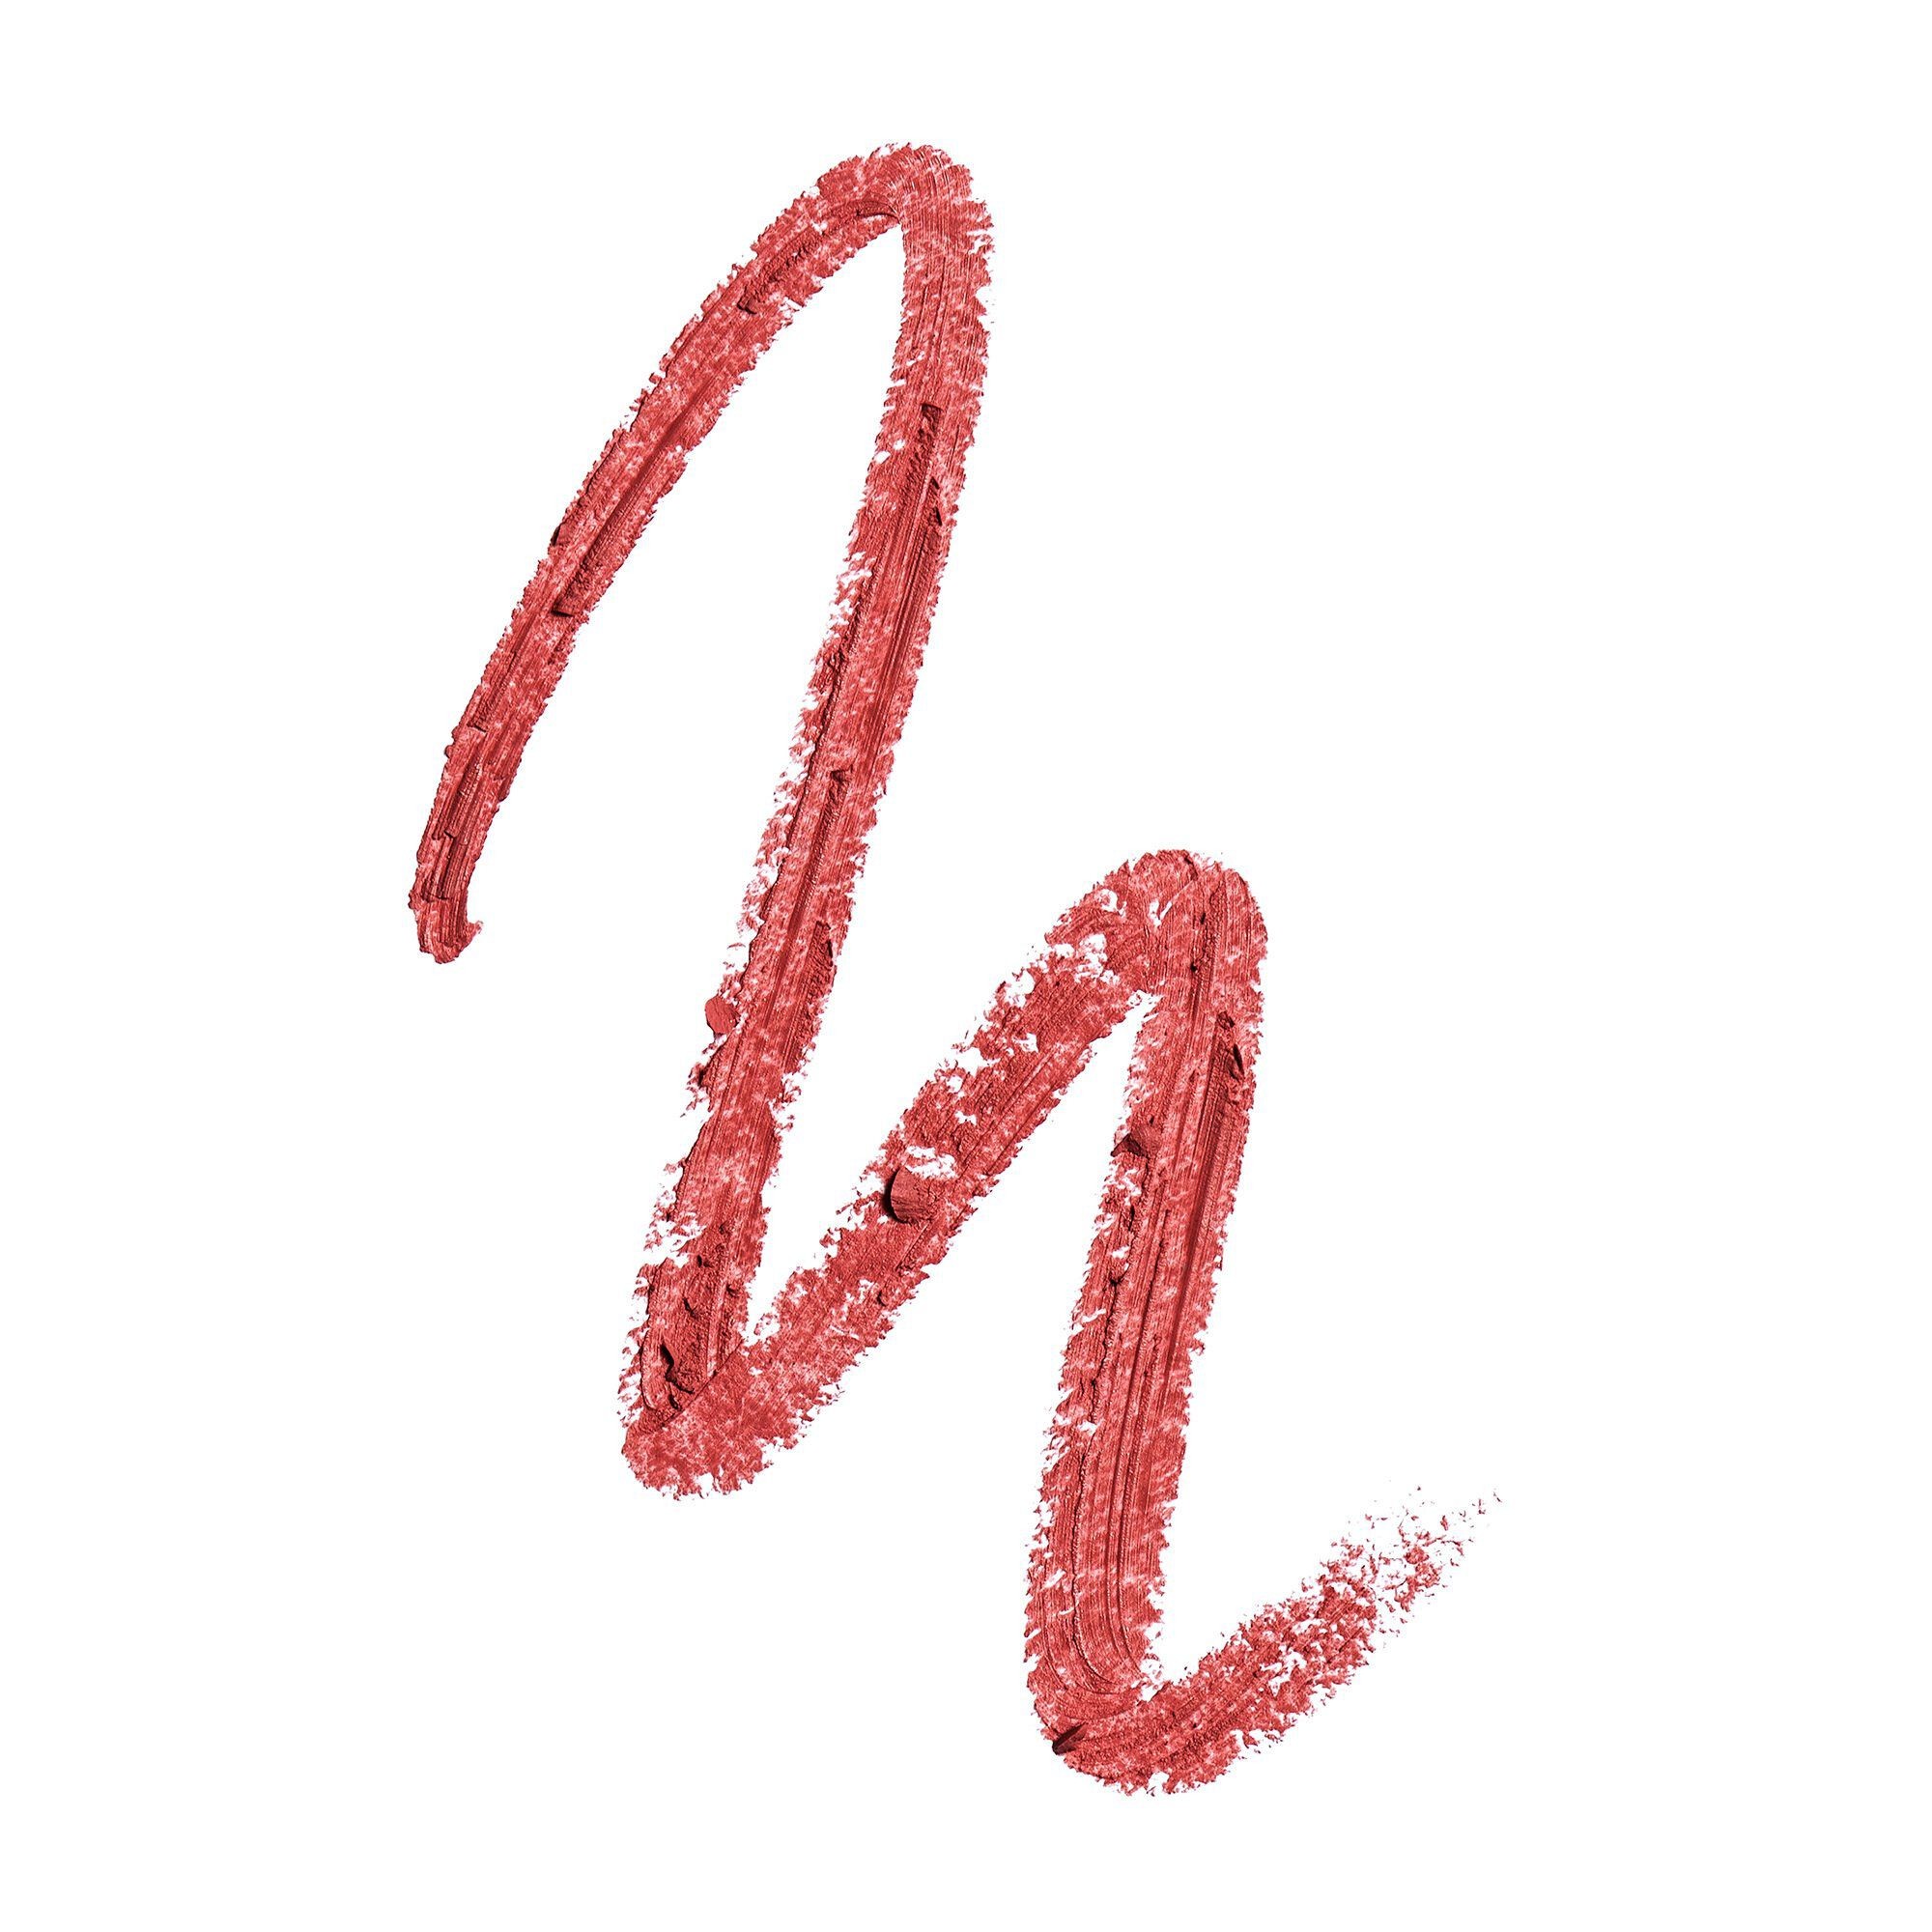 Rouge à Lèvres - Matchmaker Lip Crayon